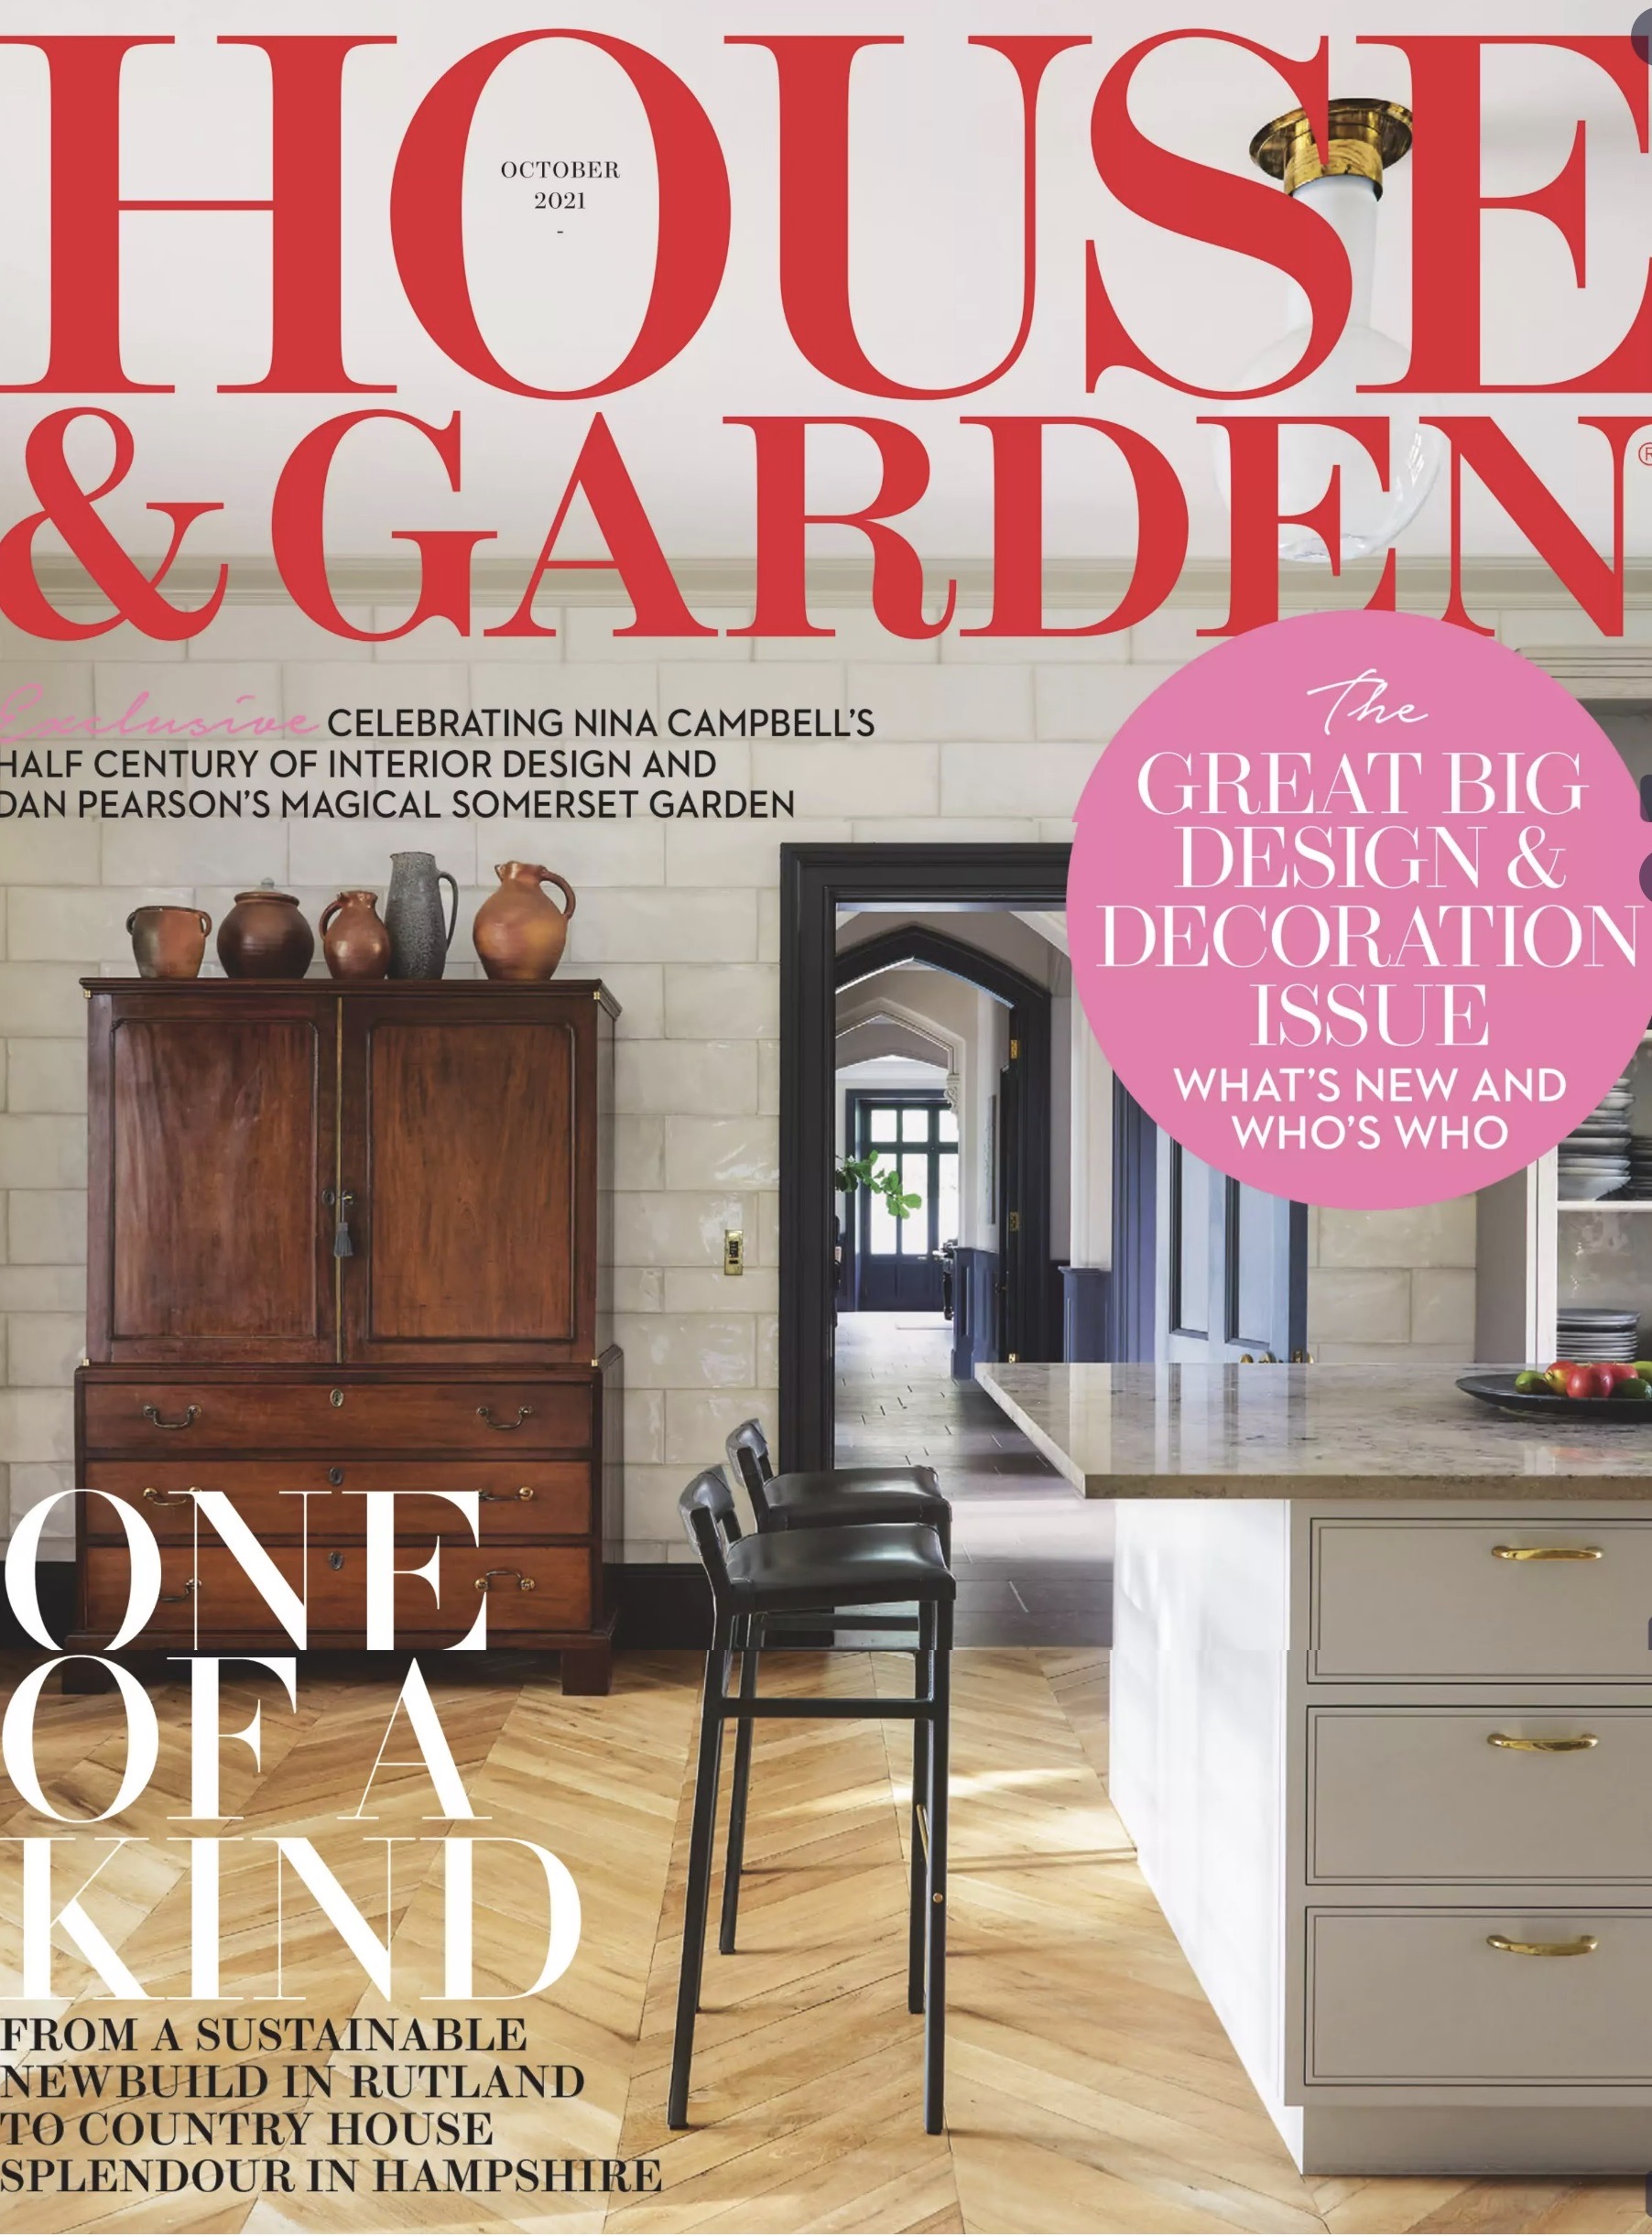 House & Garden (UK) – October Issue 2021